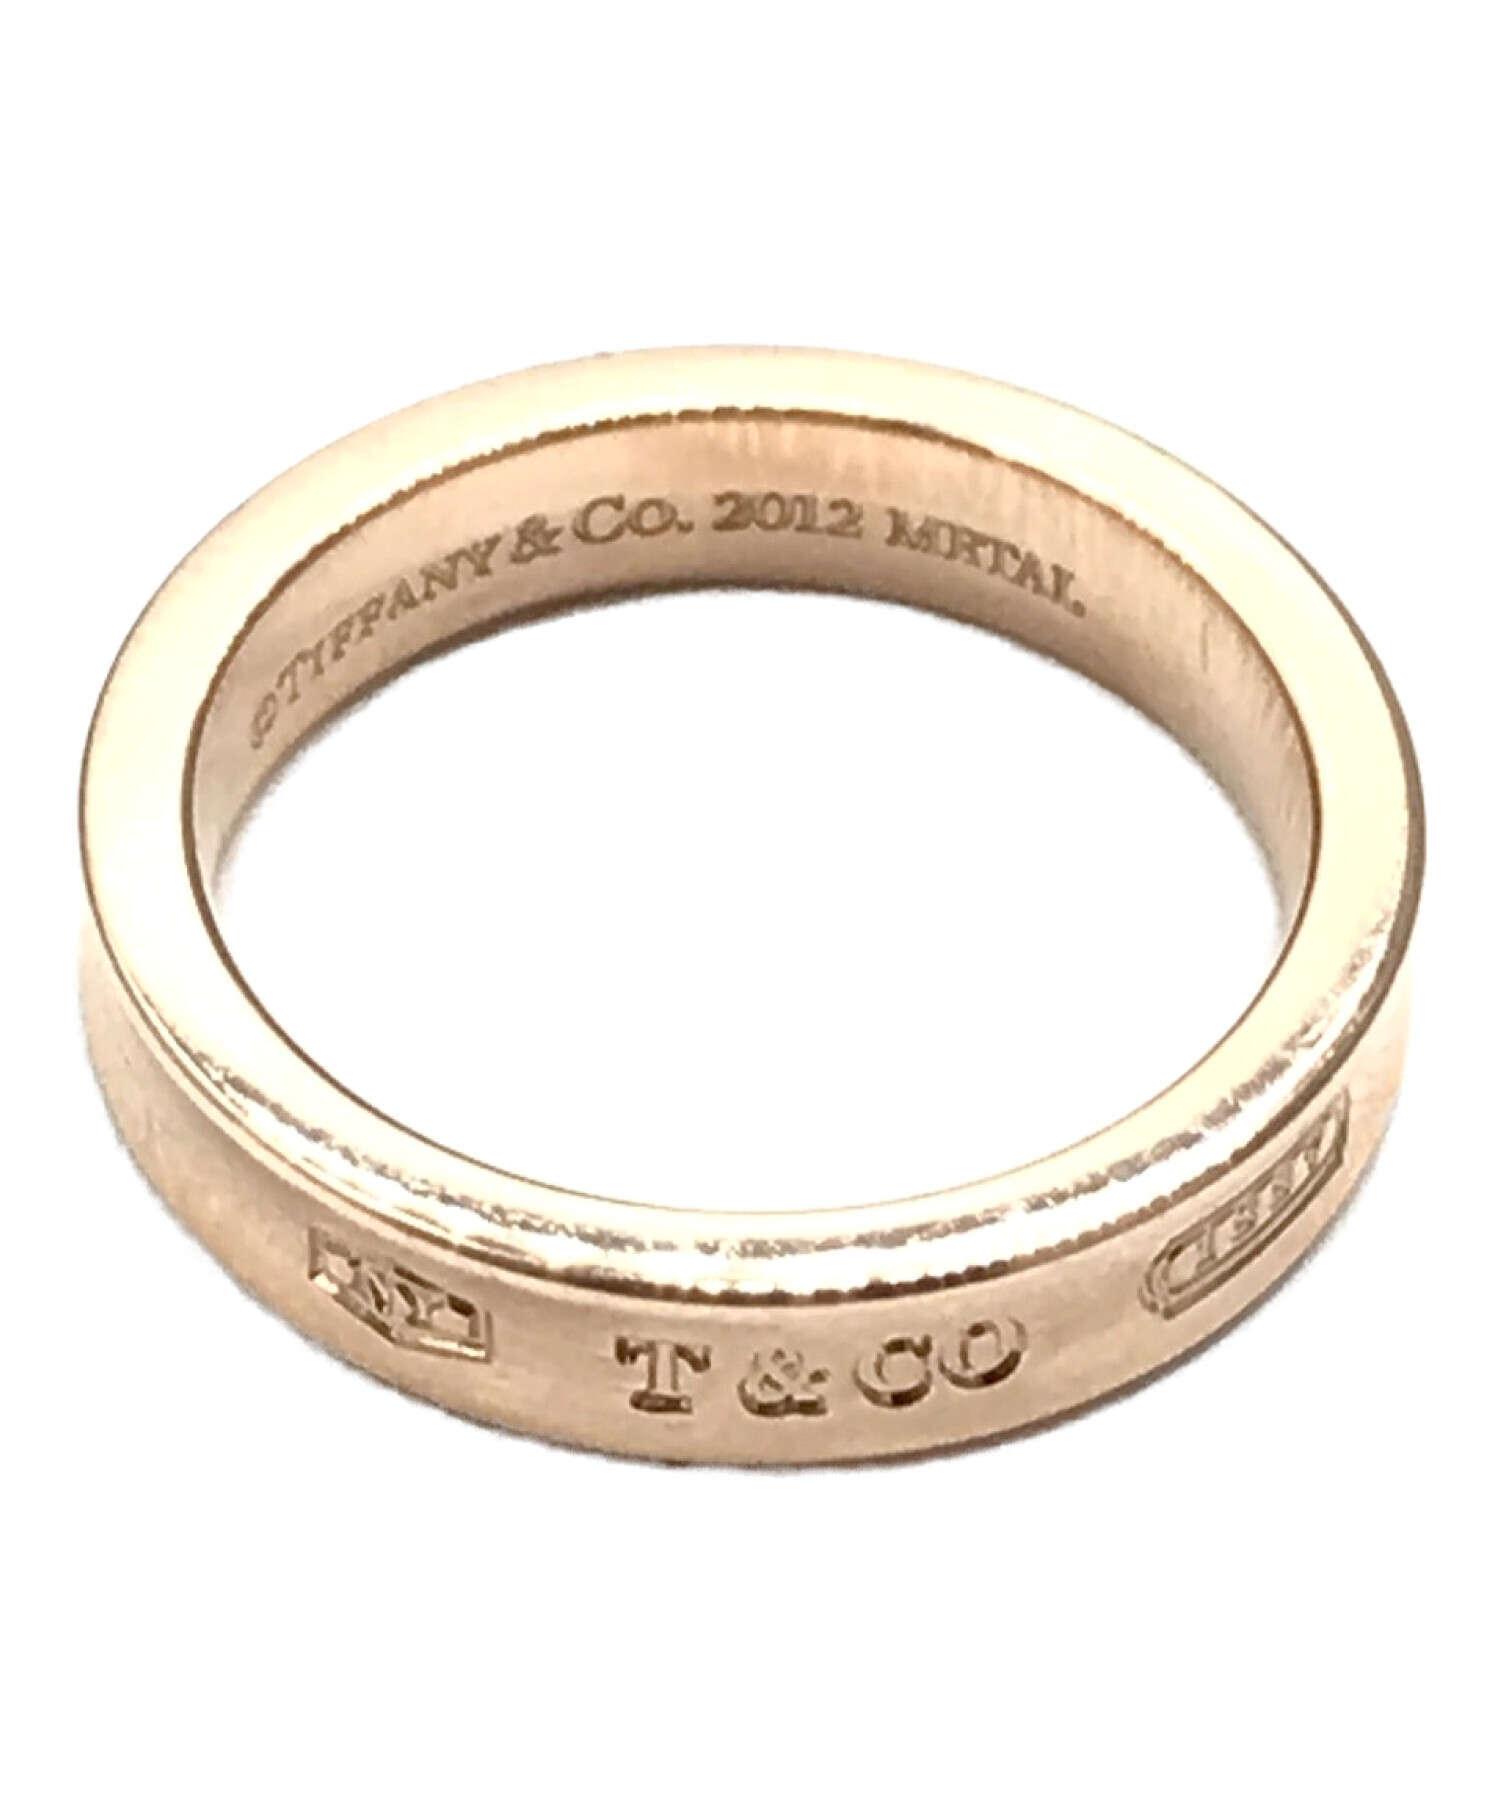 ティファニー ルベドメタル 1837 ナローリング 指輪 約7号 ピンクゴールド-